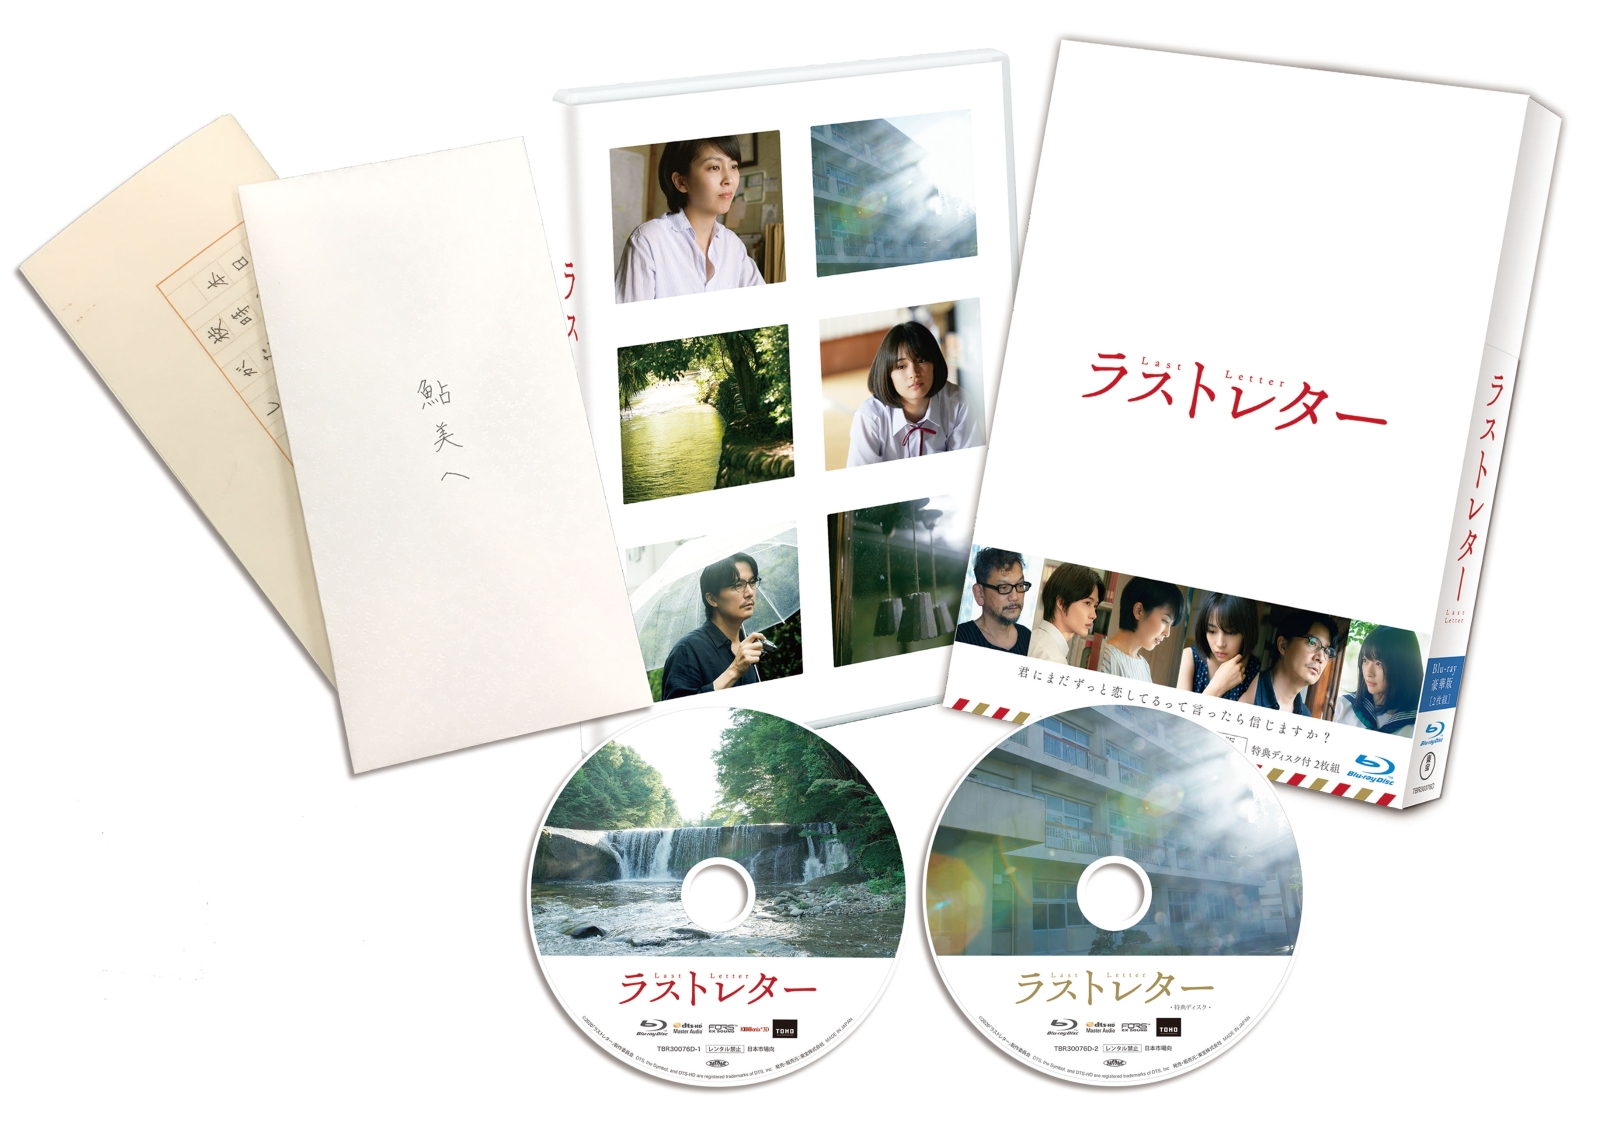 楽天ブックス: ラストレター 豪華版【Blu-ray】 - 岩井俊二 - 松たか子